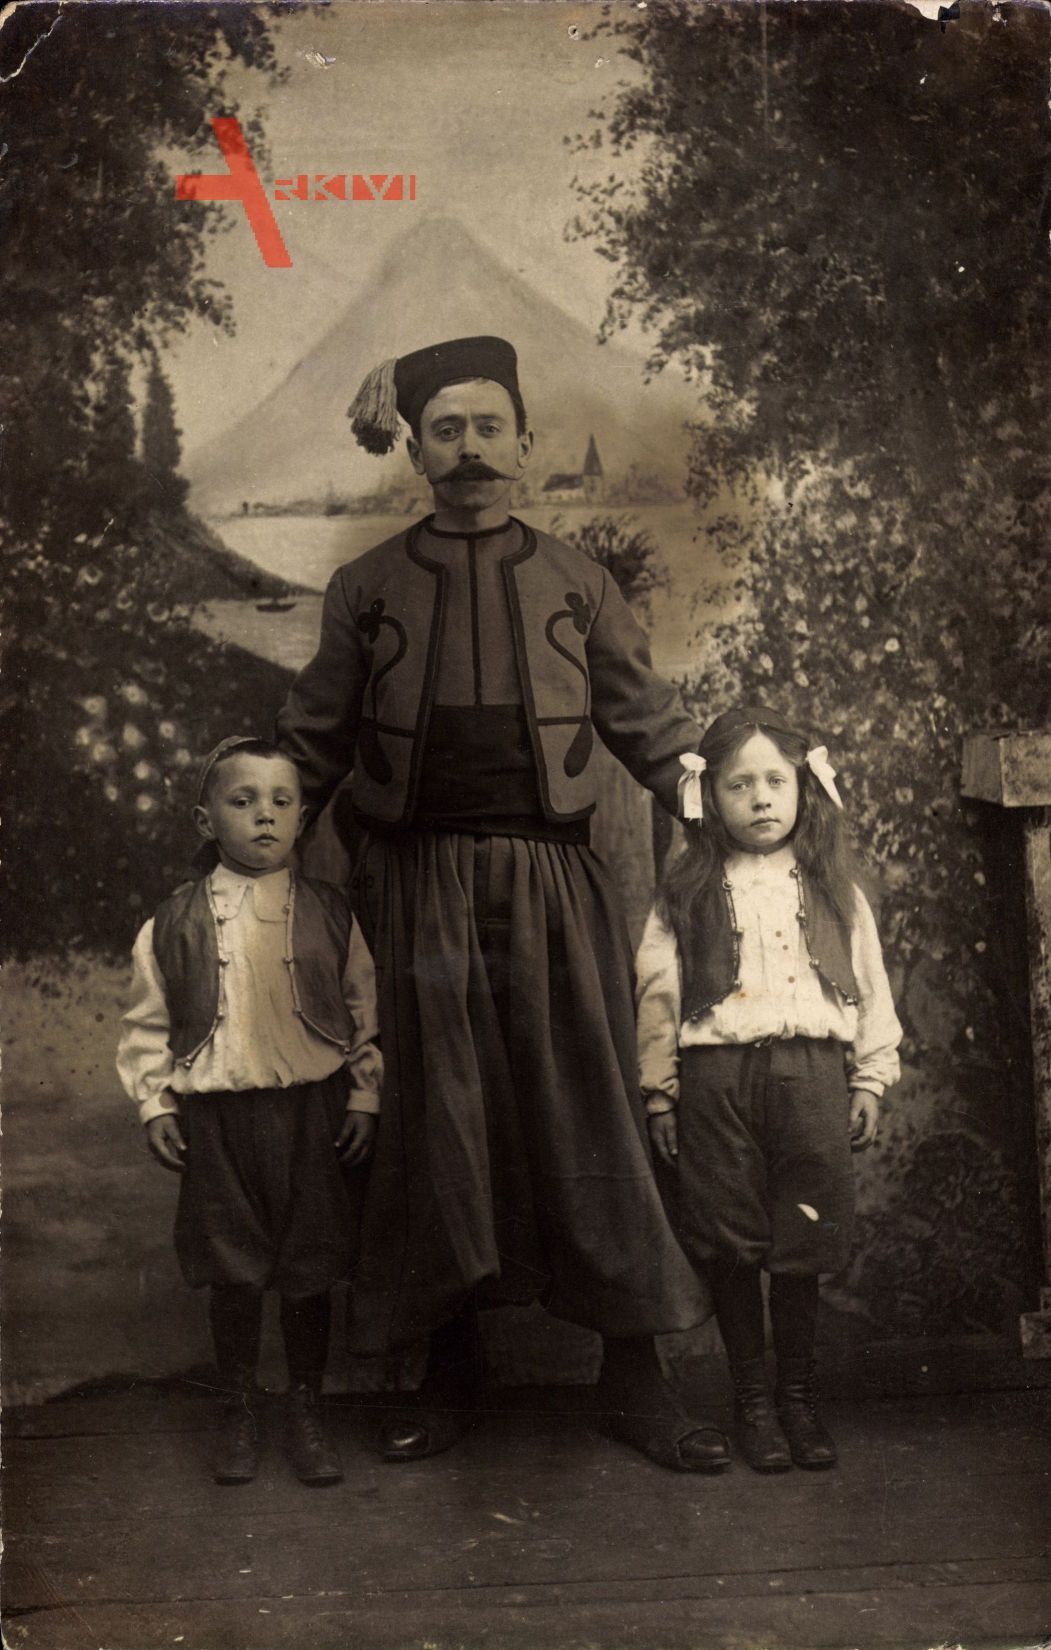 Französischer Soldat in Uniform, Kolonialkrieger, Kinder, Uniform